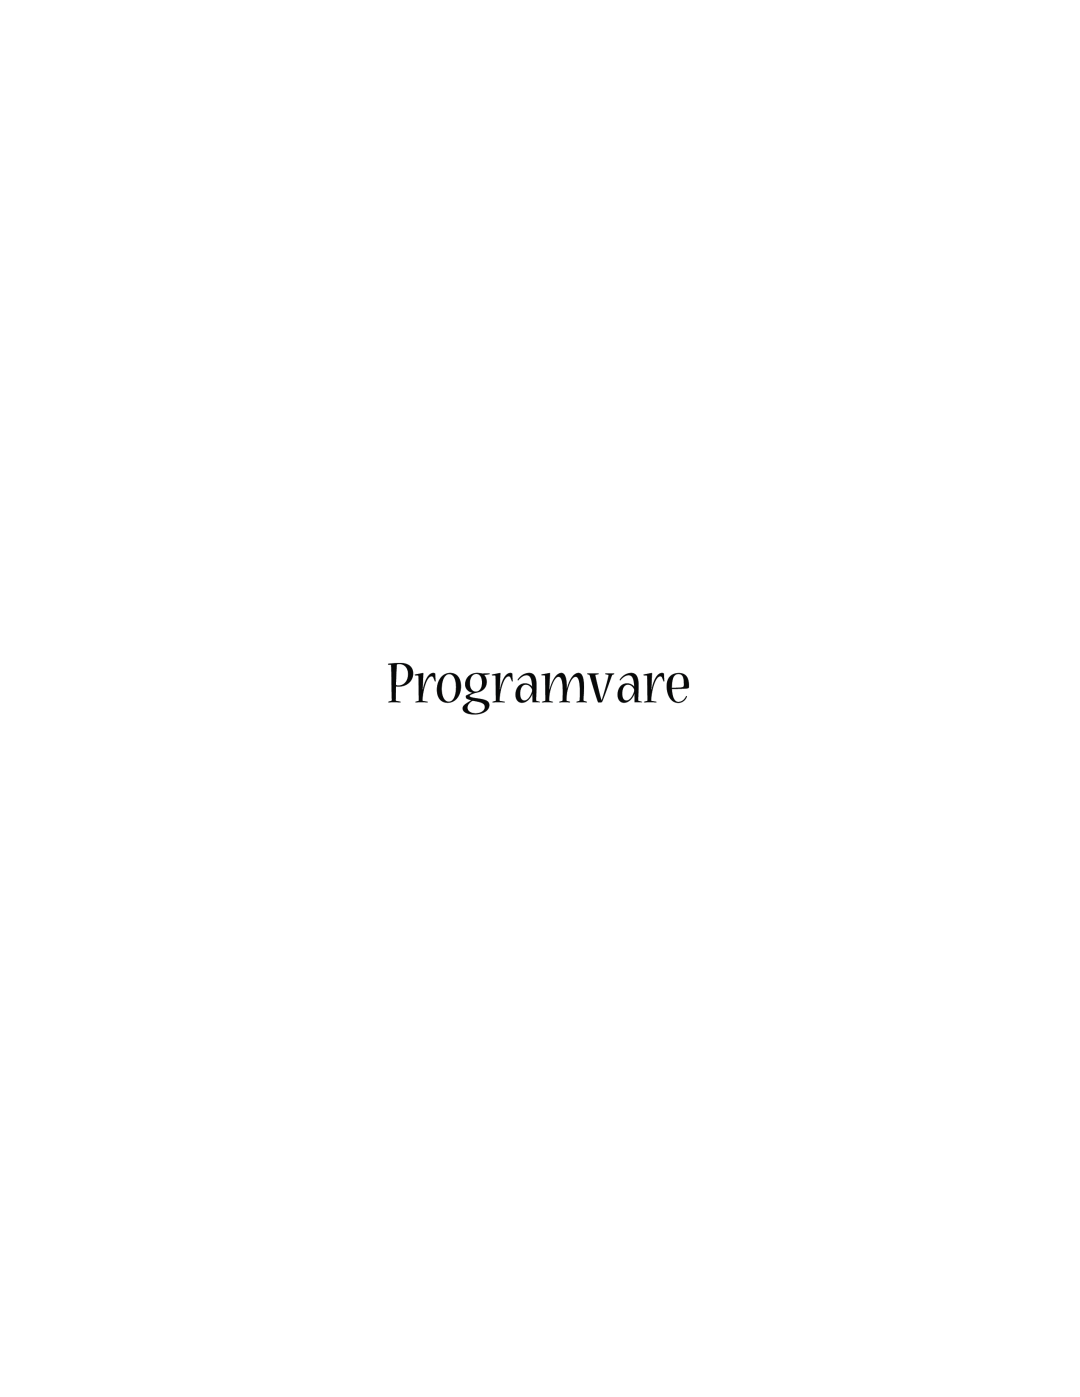 Acer 1660 manual Programvare 